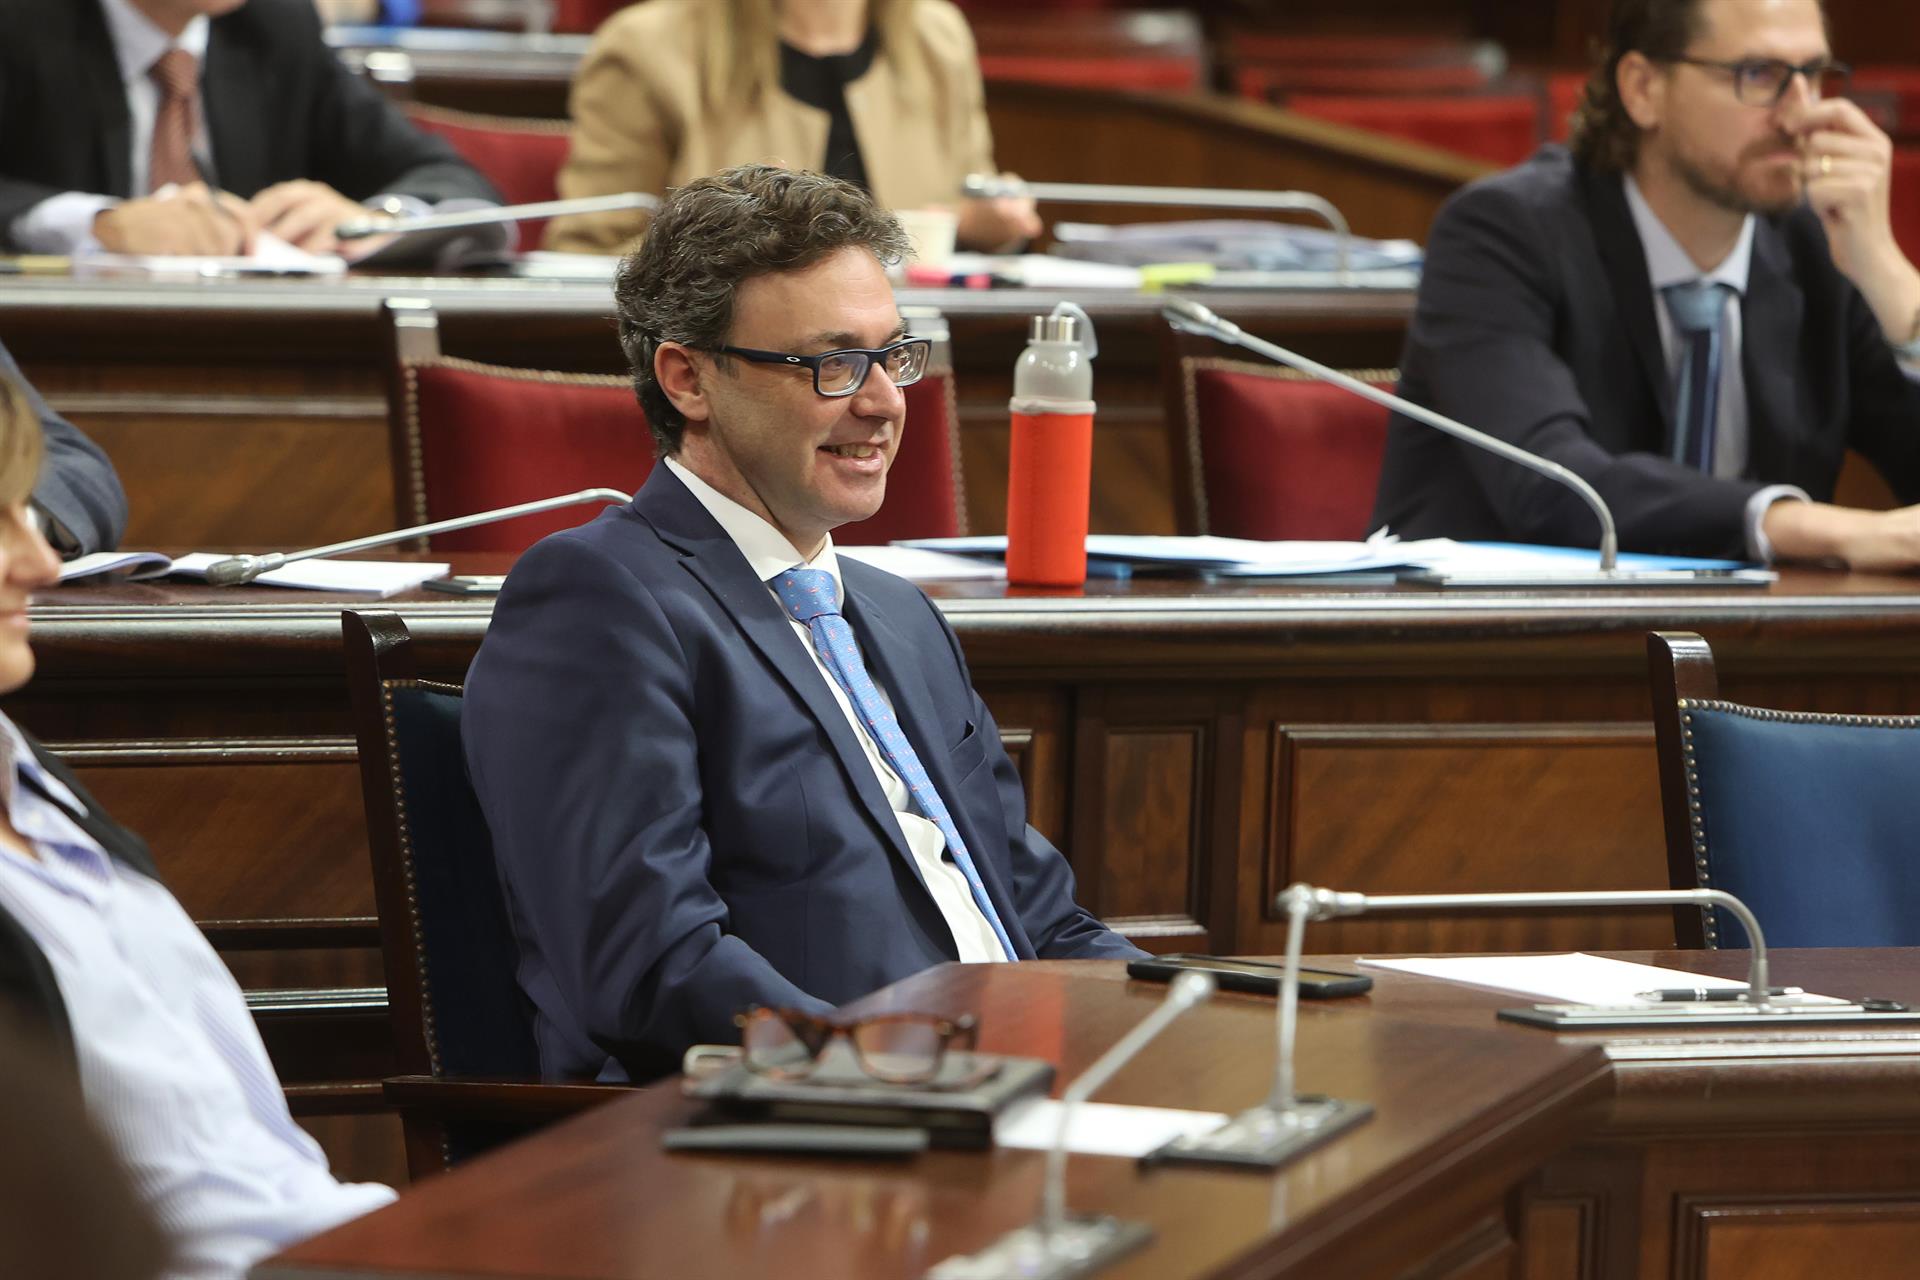 El portavoz del Govern y conseller de Economía, Hacienda e Innovación, Toni Costa, durante una sesión plenaria en el Parlament balear - Isaac Buj - Europa Press - Archivo